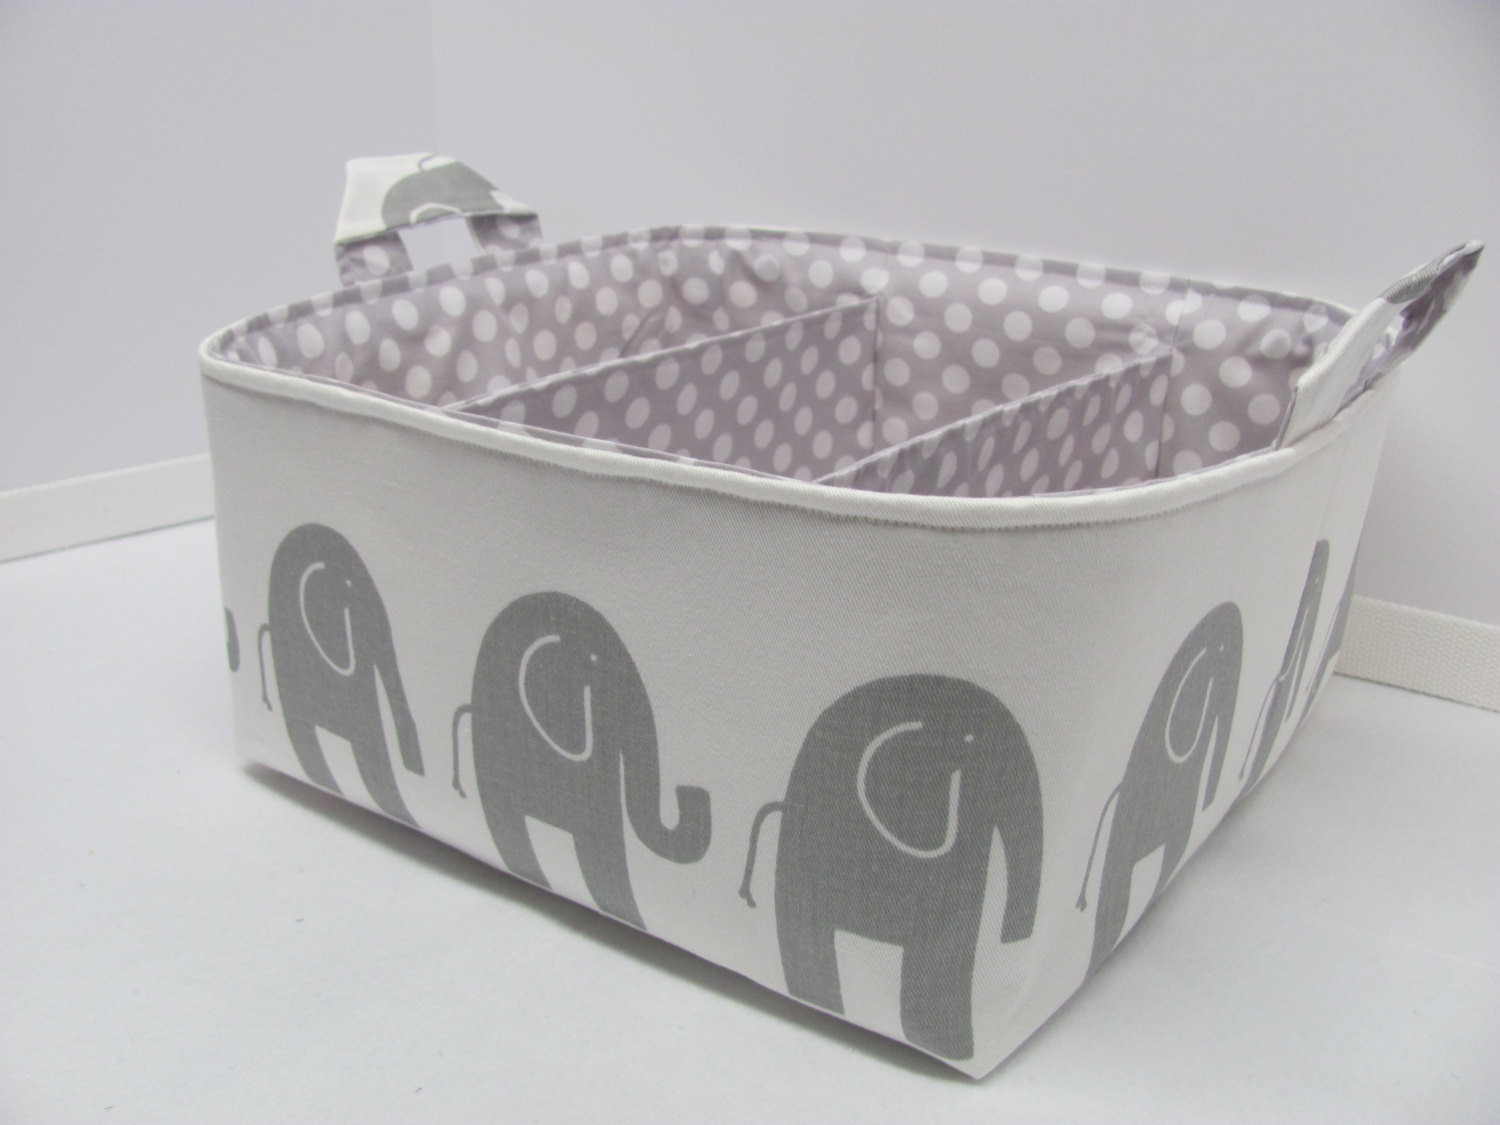 Best ideas about Baby Storage Basket
. Save or Pin Nursery Storage Bin TheNurseries Now.